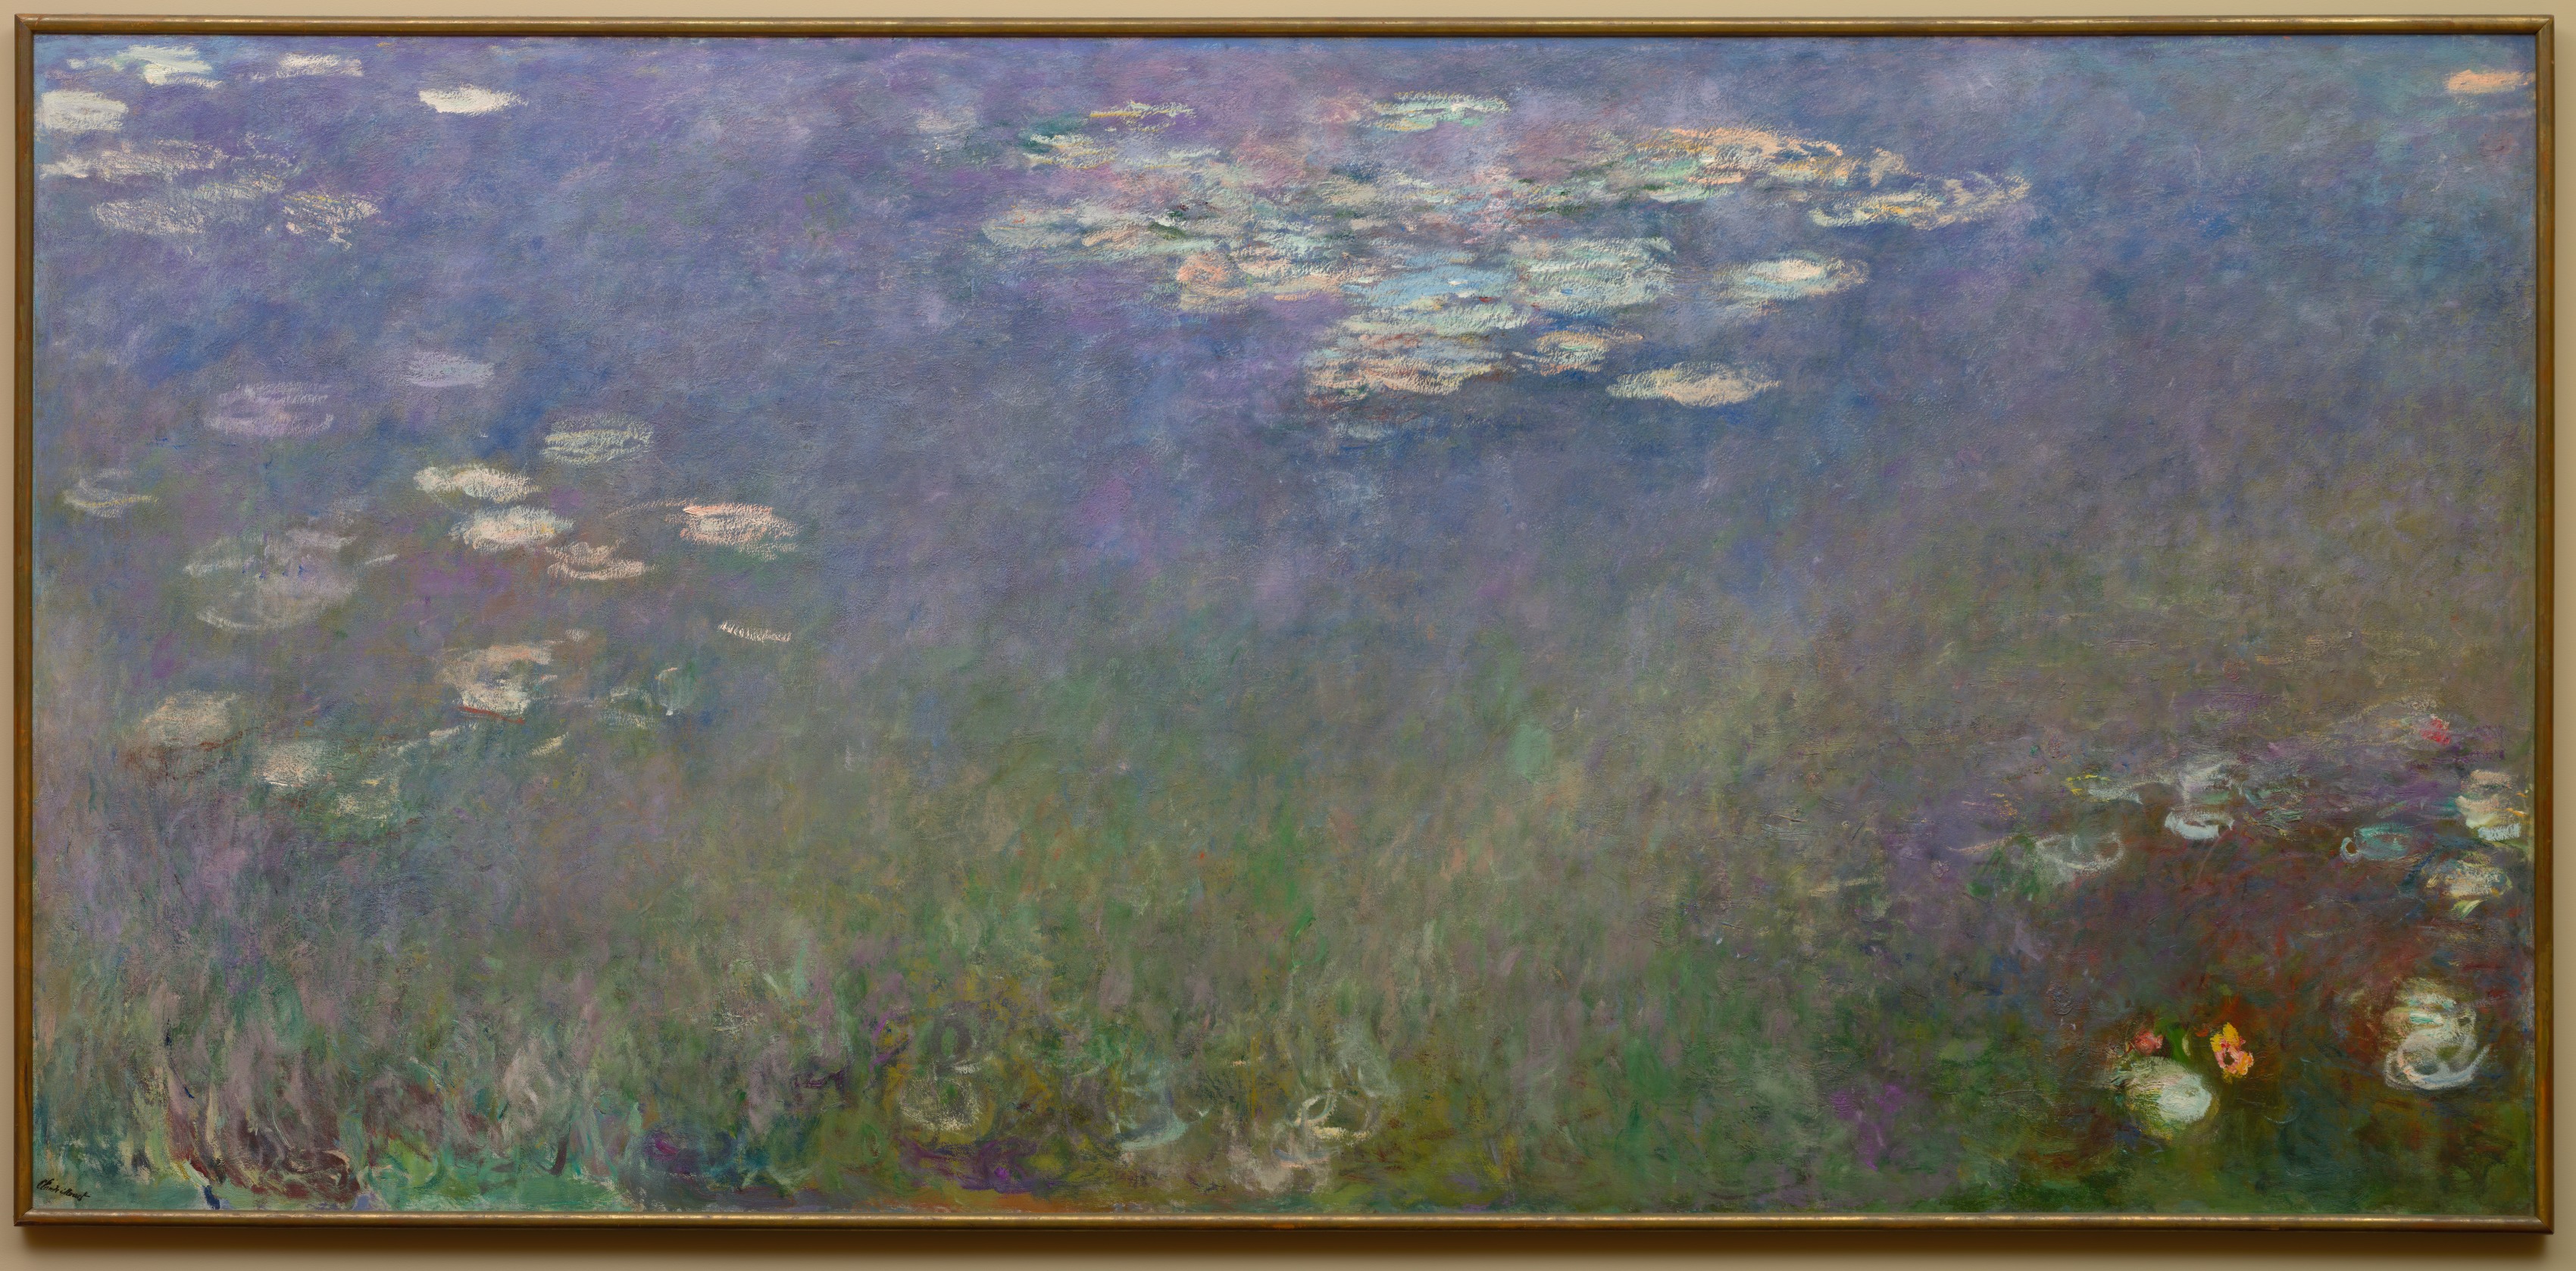 Nuferi (Agapanthus) by Claude Monet - aprox. 1915–26 - 201.3 x 425.6 cm 